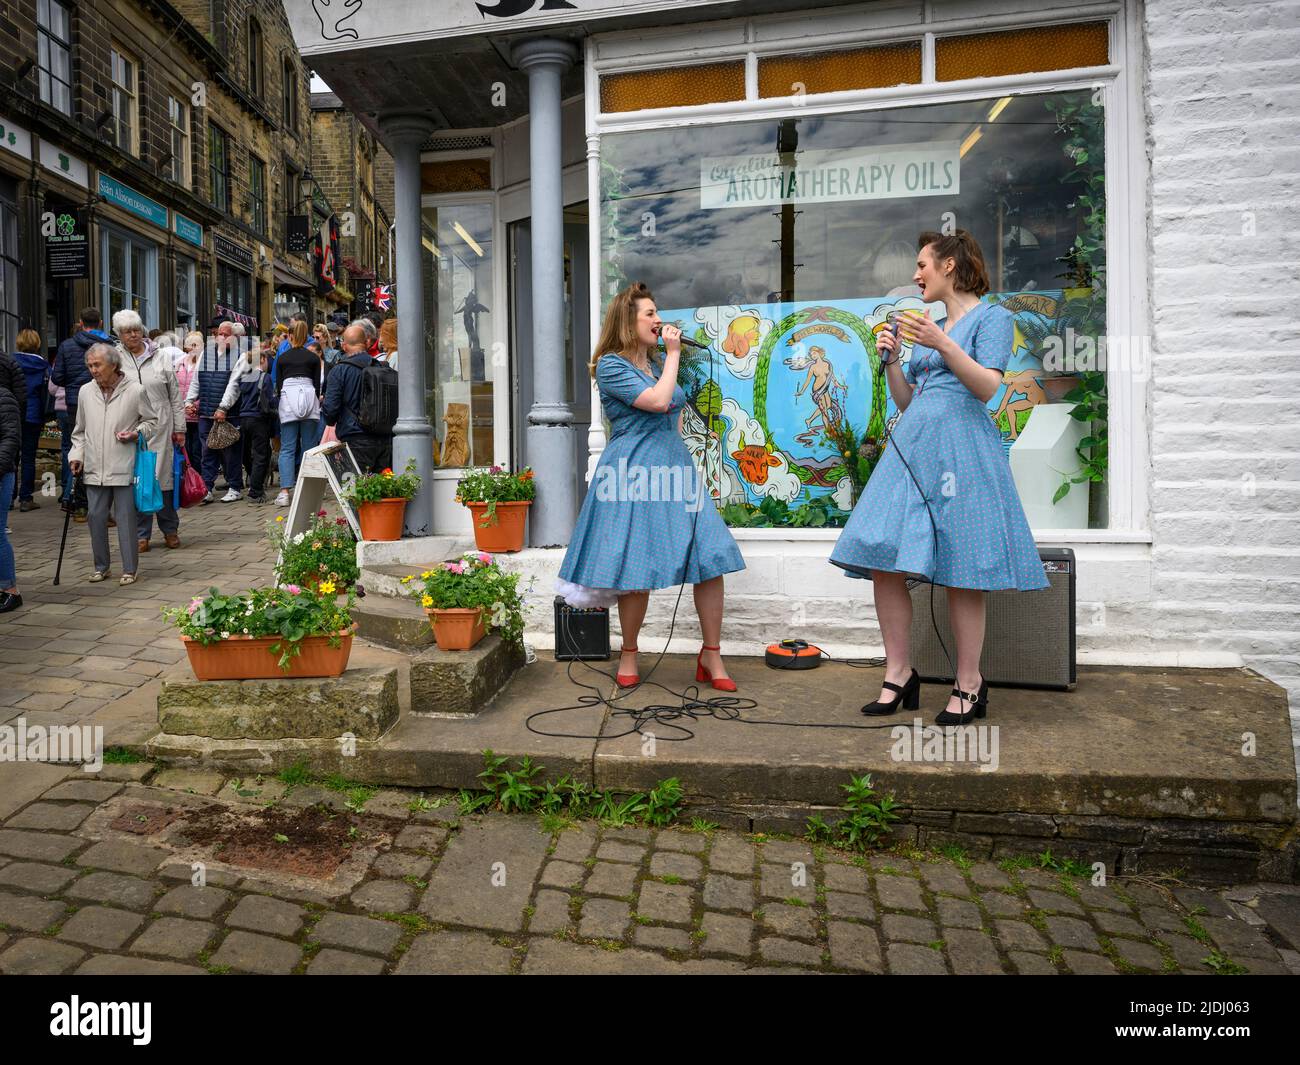 Haworth 1940 événement rétro et nostalgique de l'histoire vivante (2 deux dames jouent de la musique en direct amusant main Street surpeuplée) - West Yorkshire Angleterre Royaume-Uni. Banque D'Images